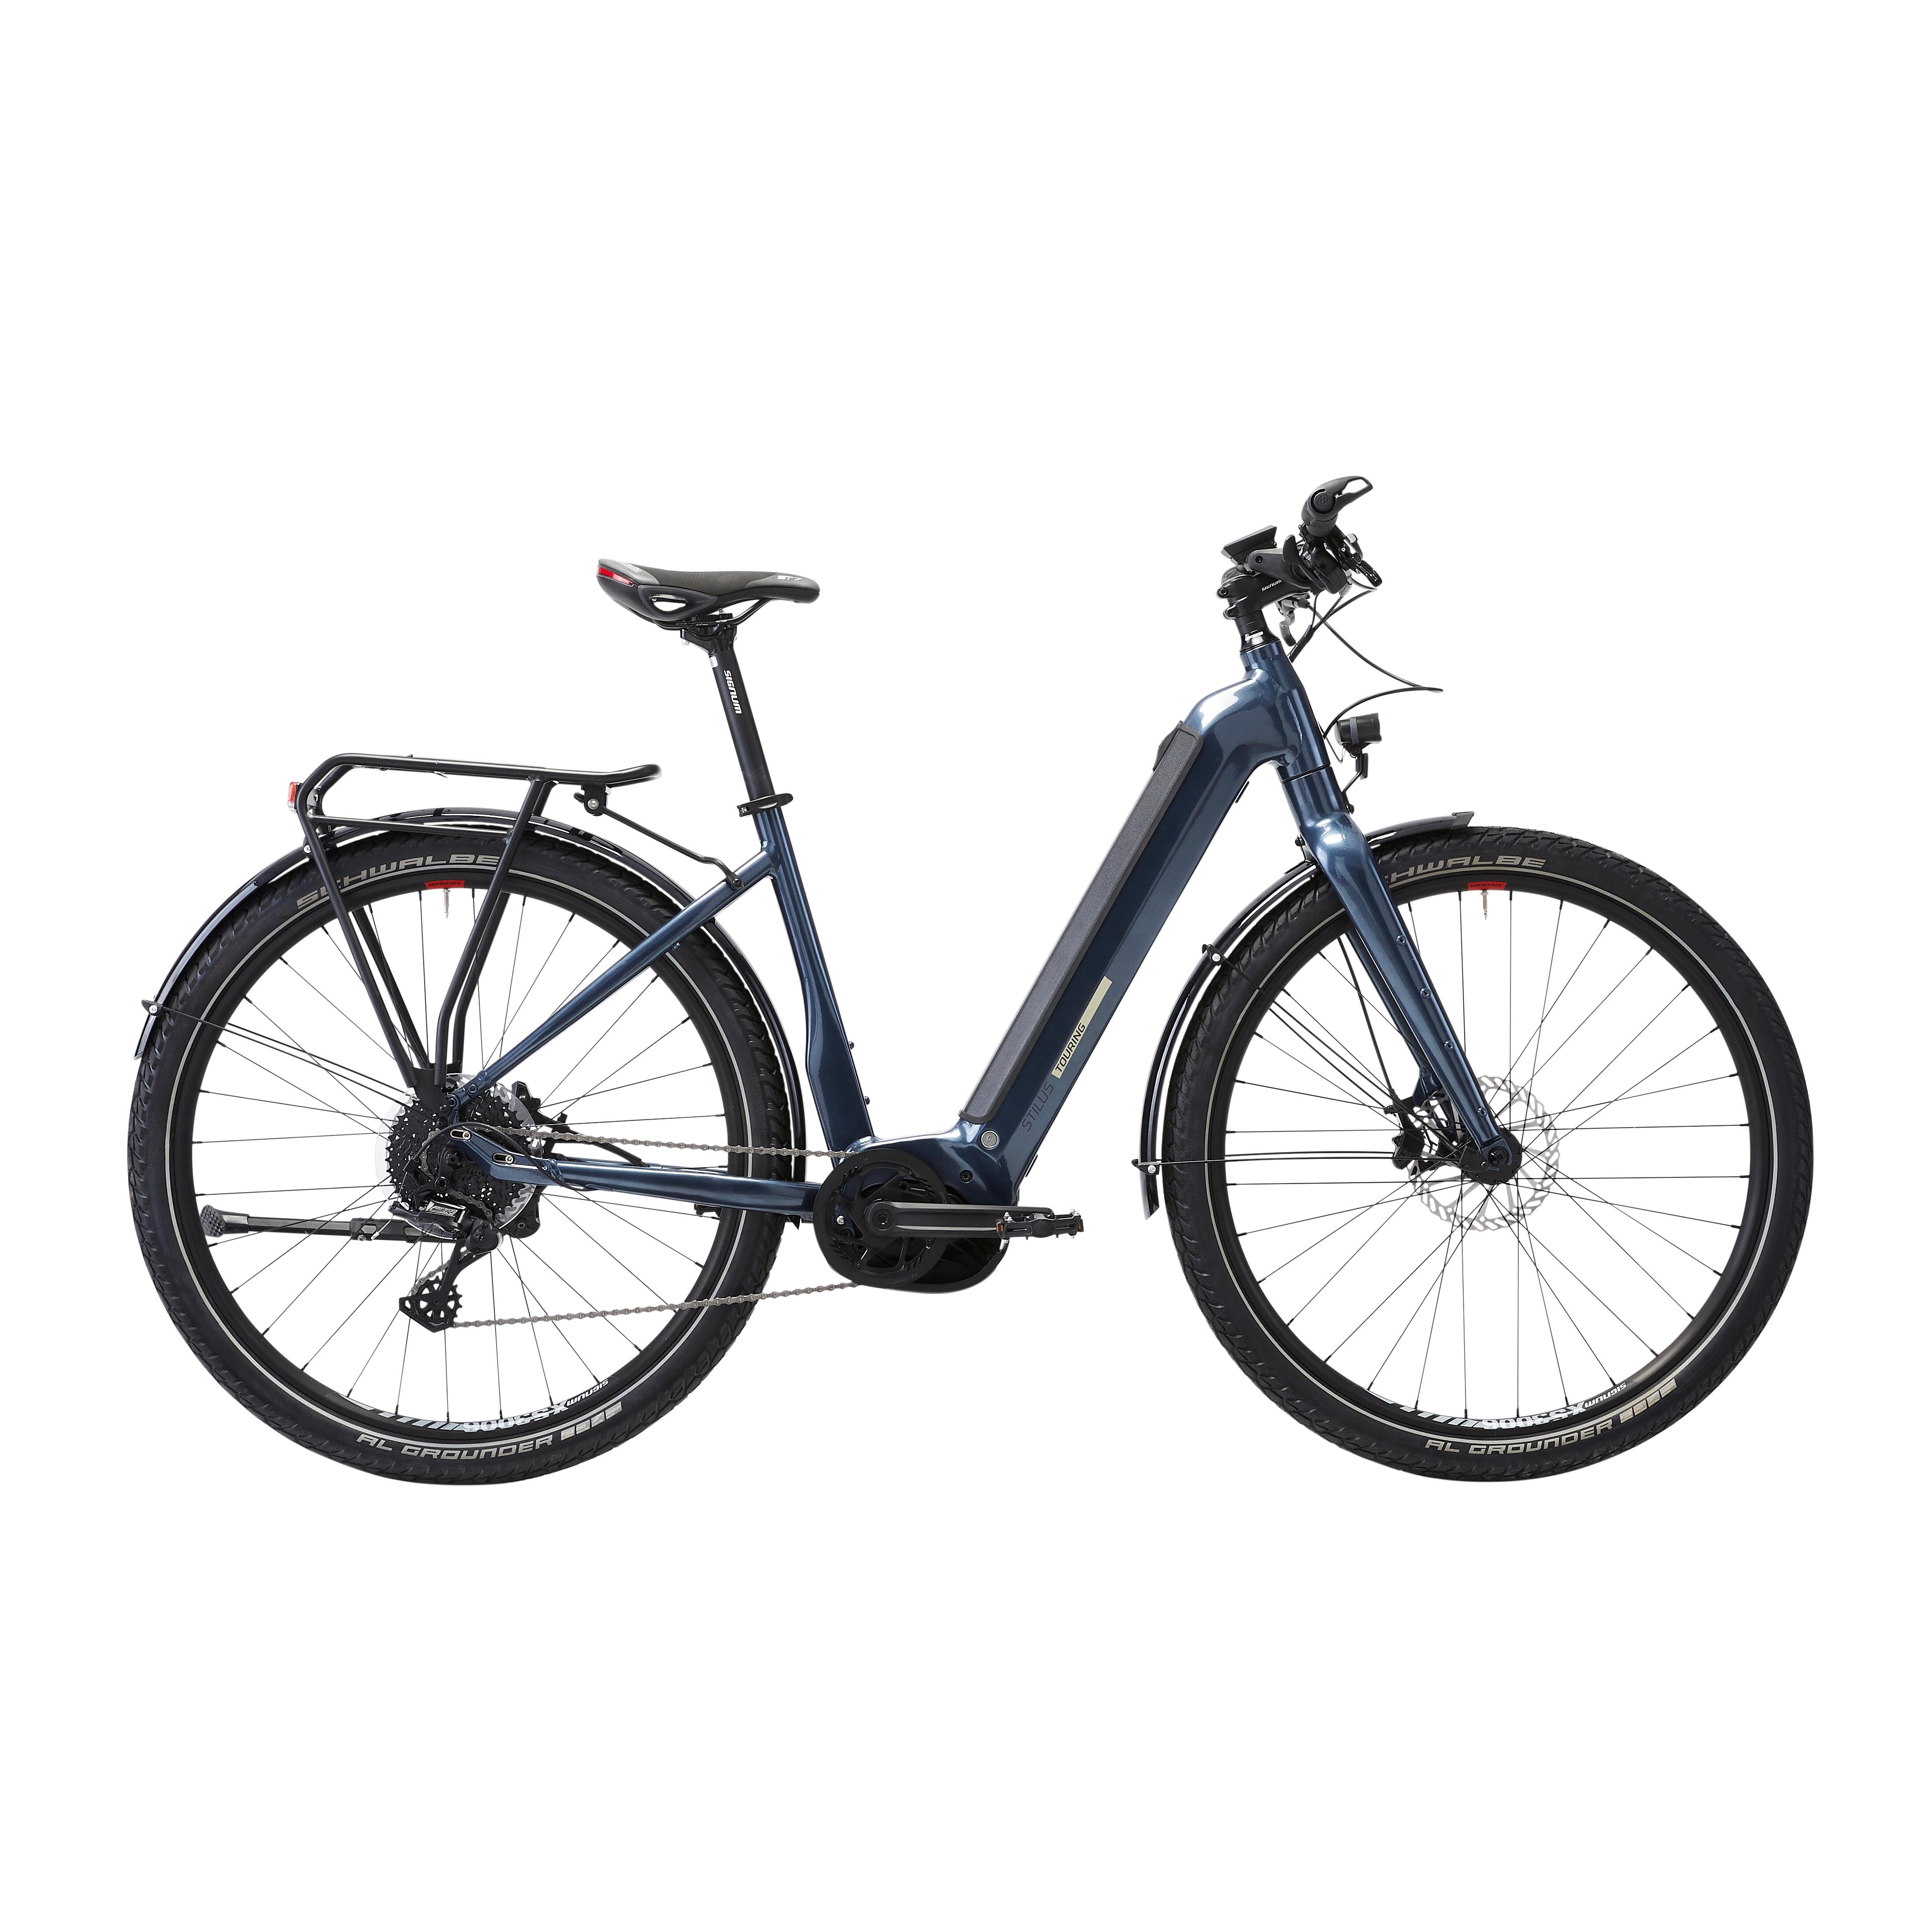 Bicicletă electrică de călătorie cu motor central puternic Bosch – Stilus E-Touring LF